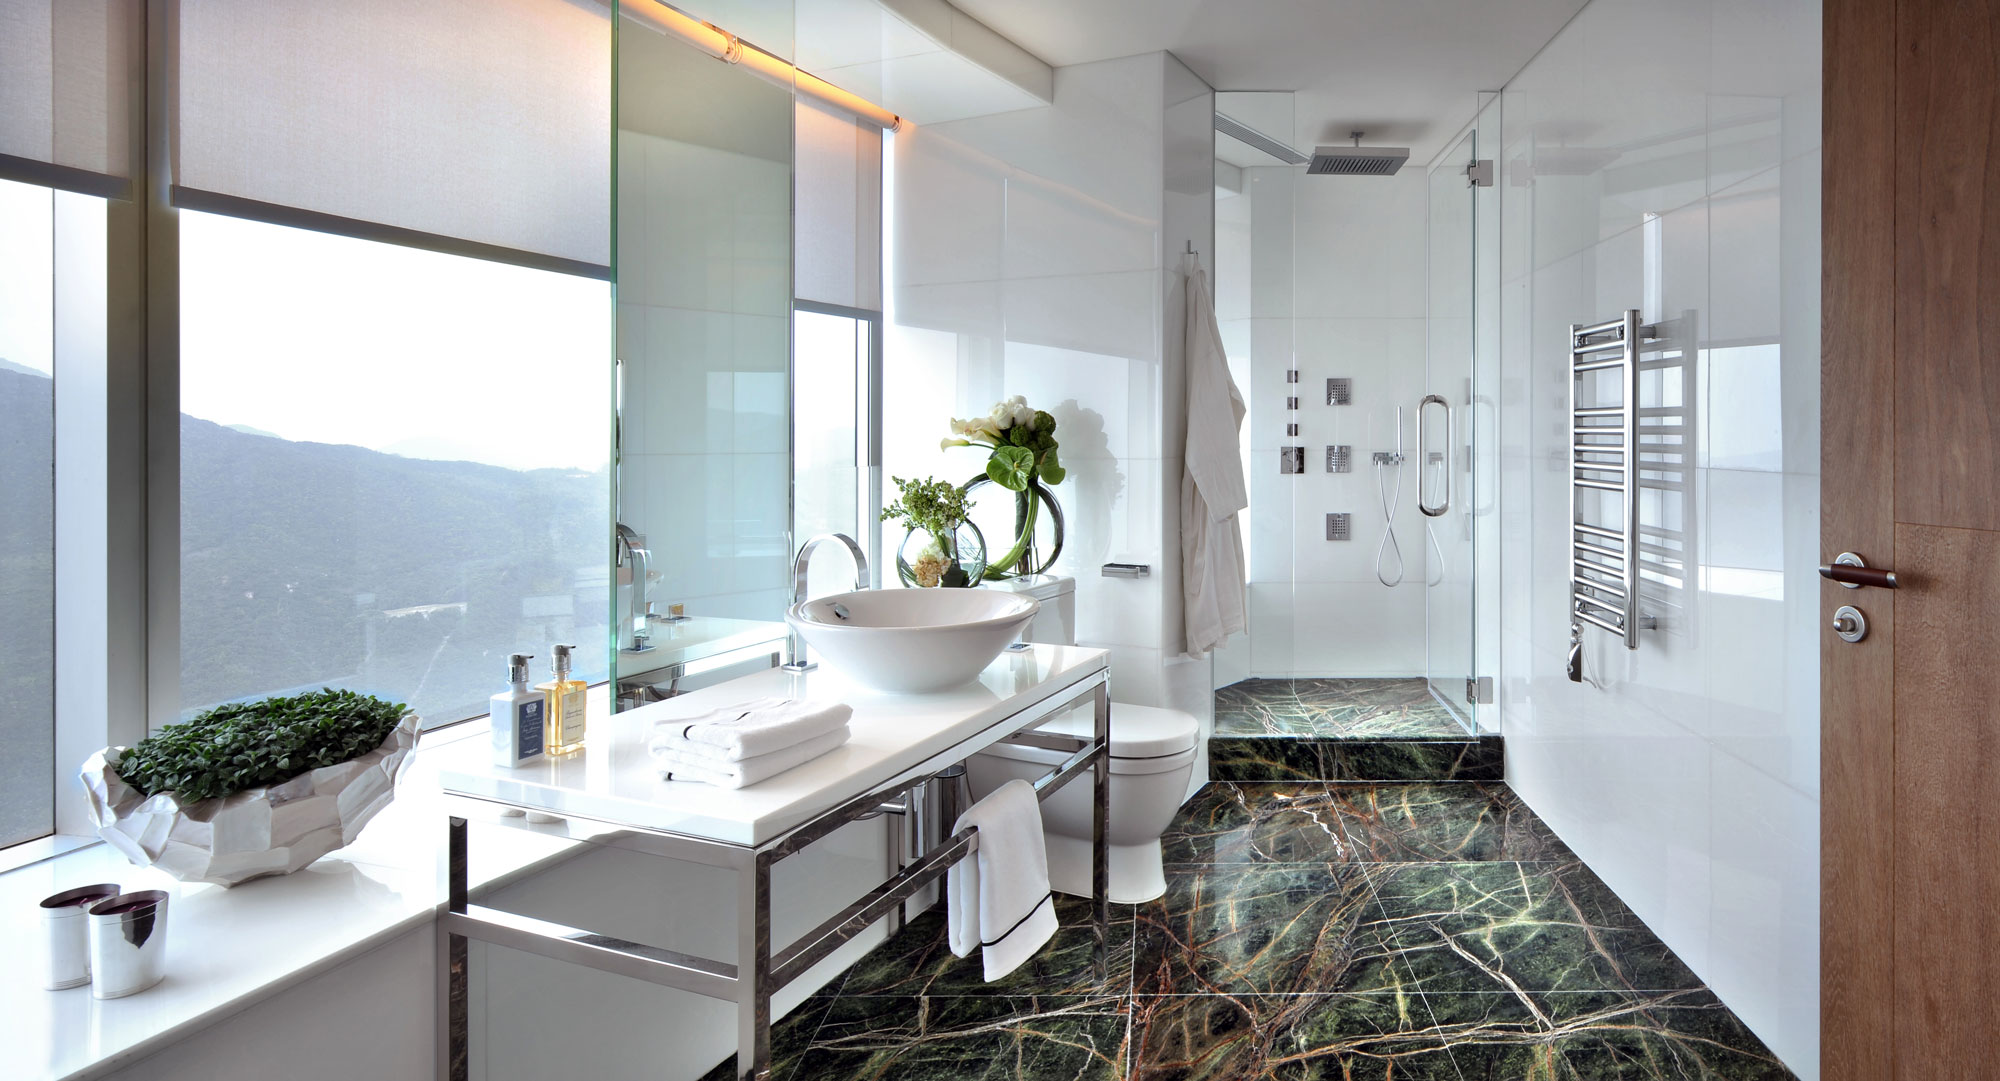 卫浴间以大理石为主，凸显出空间的大气之感，自然的纹理丰富空间内容。